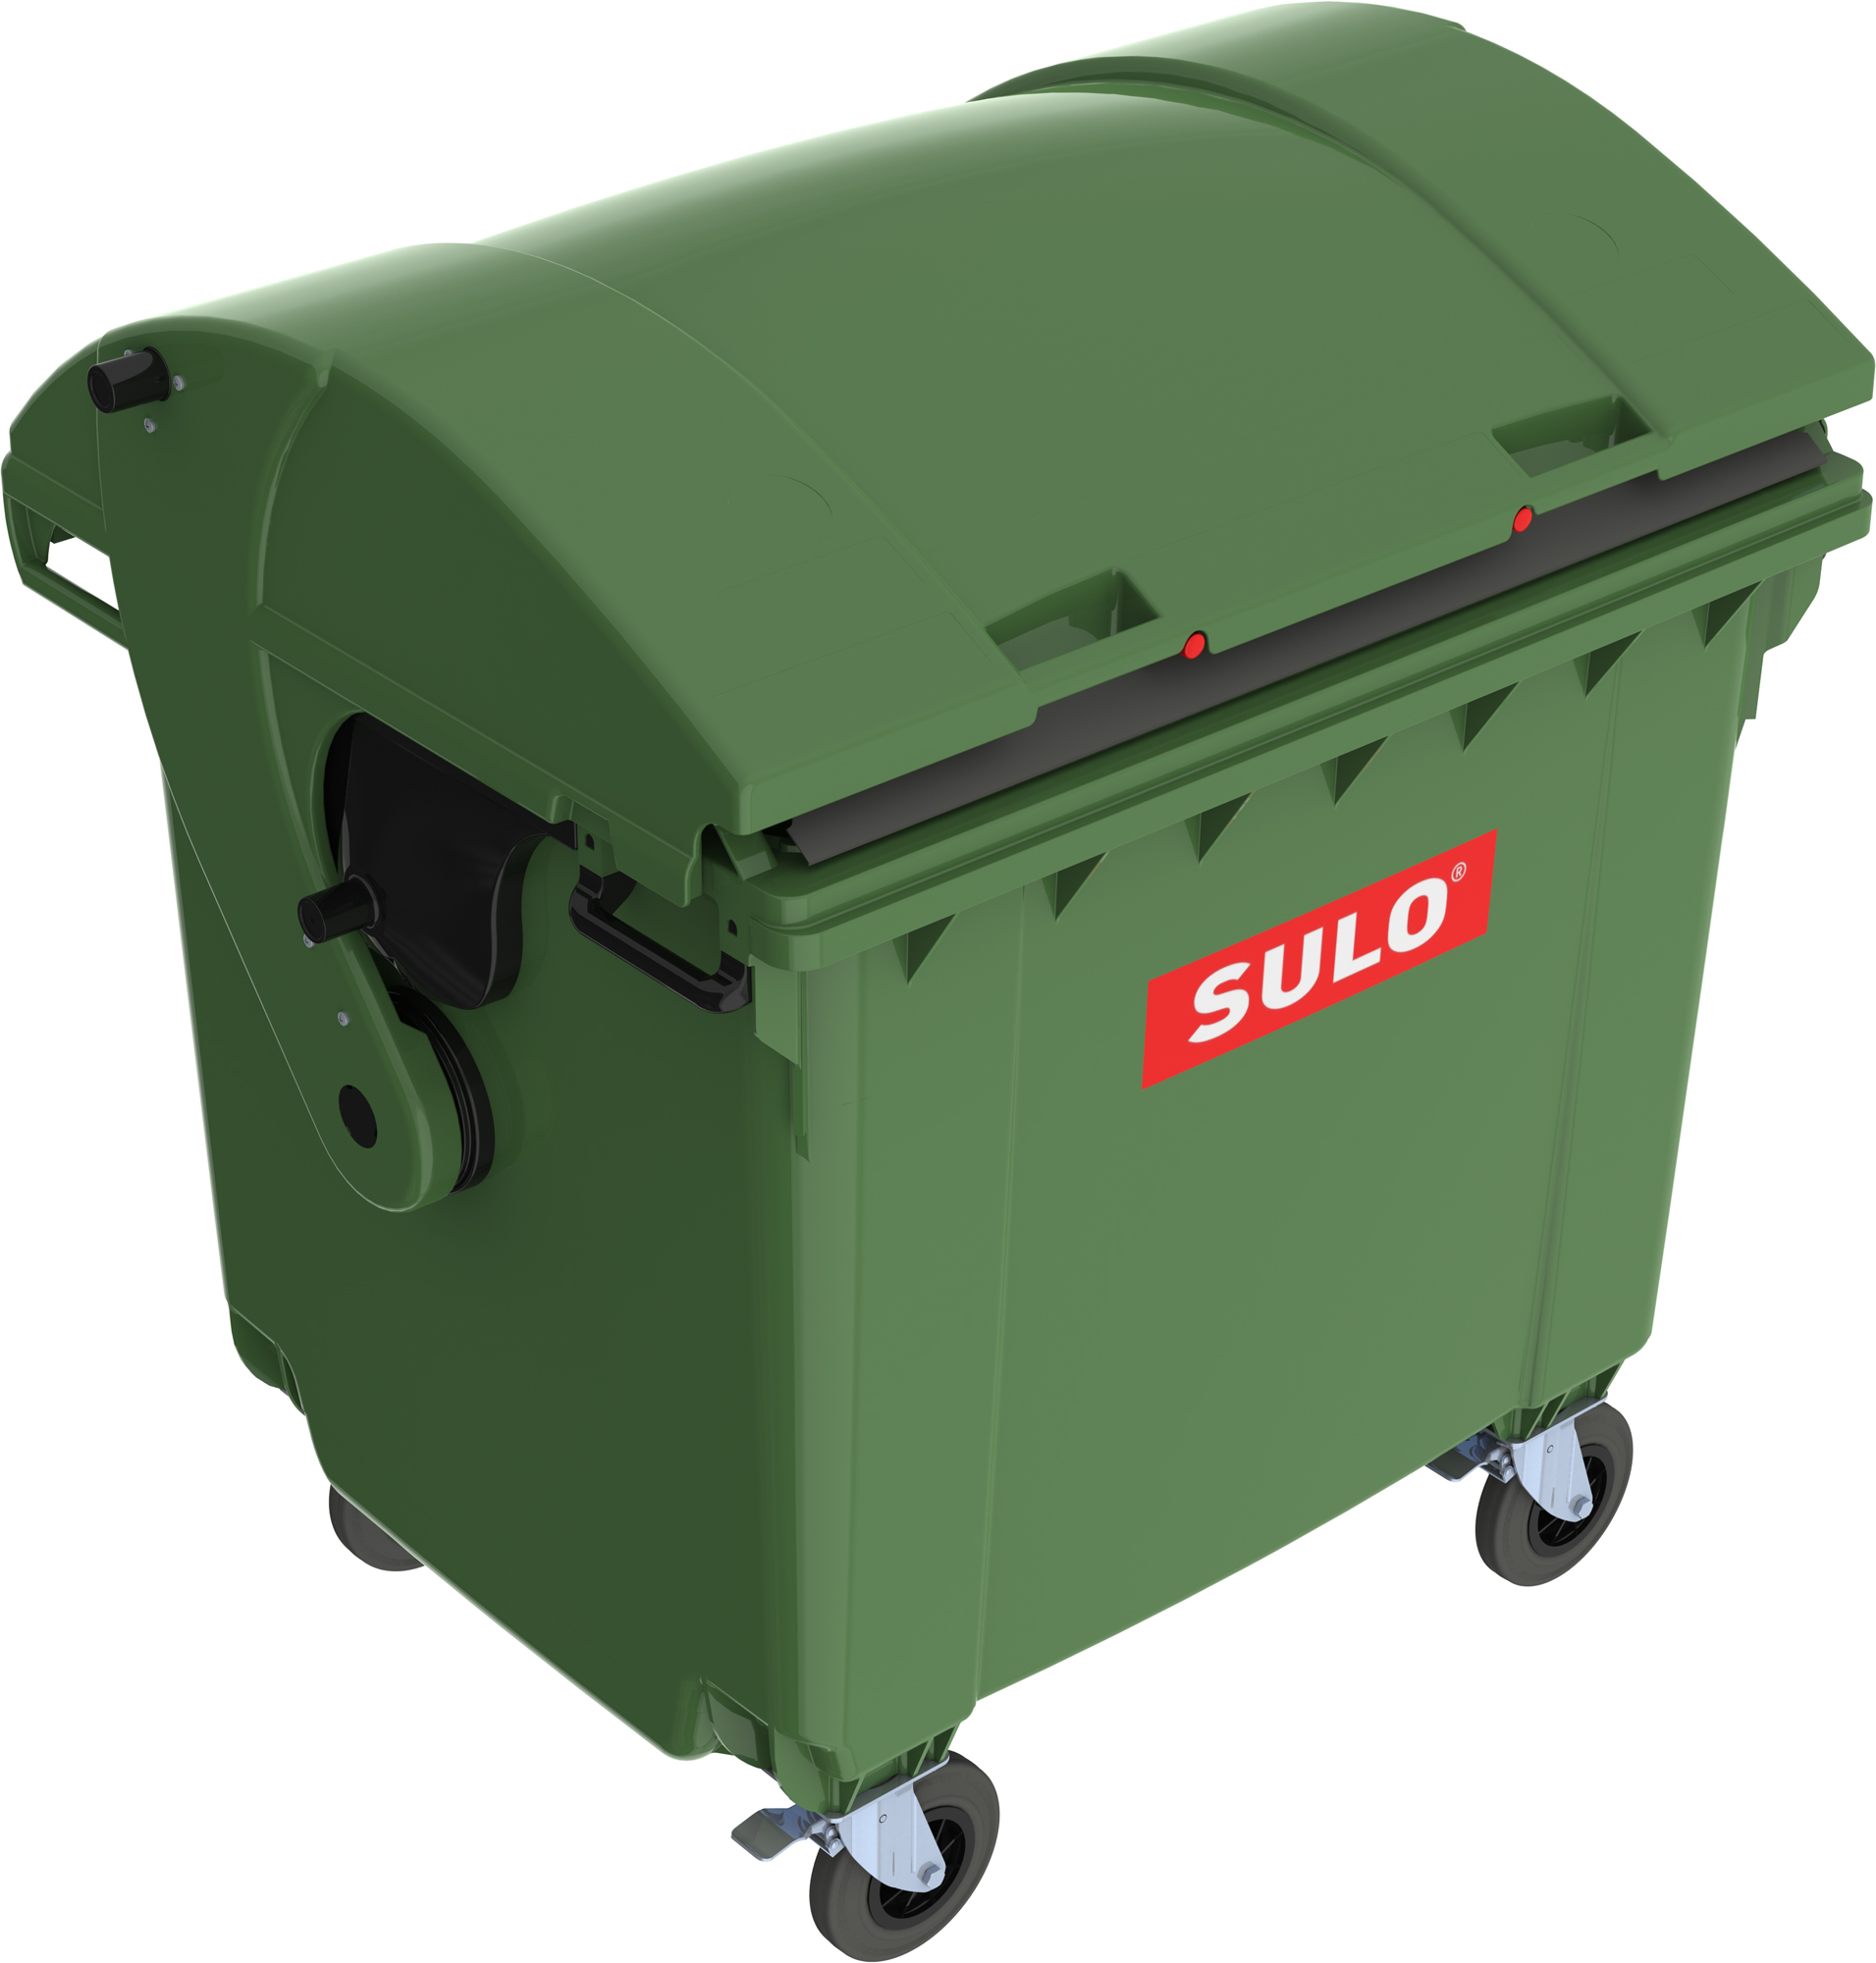 Eurocontainer plastic 1100 L verde capac rotund SULO – Transport Inclus 1100